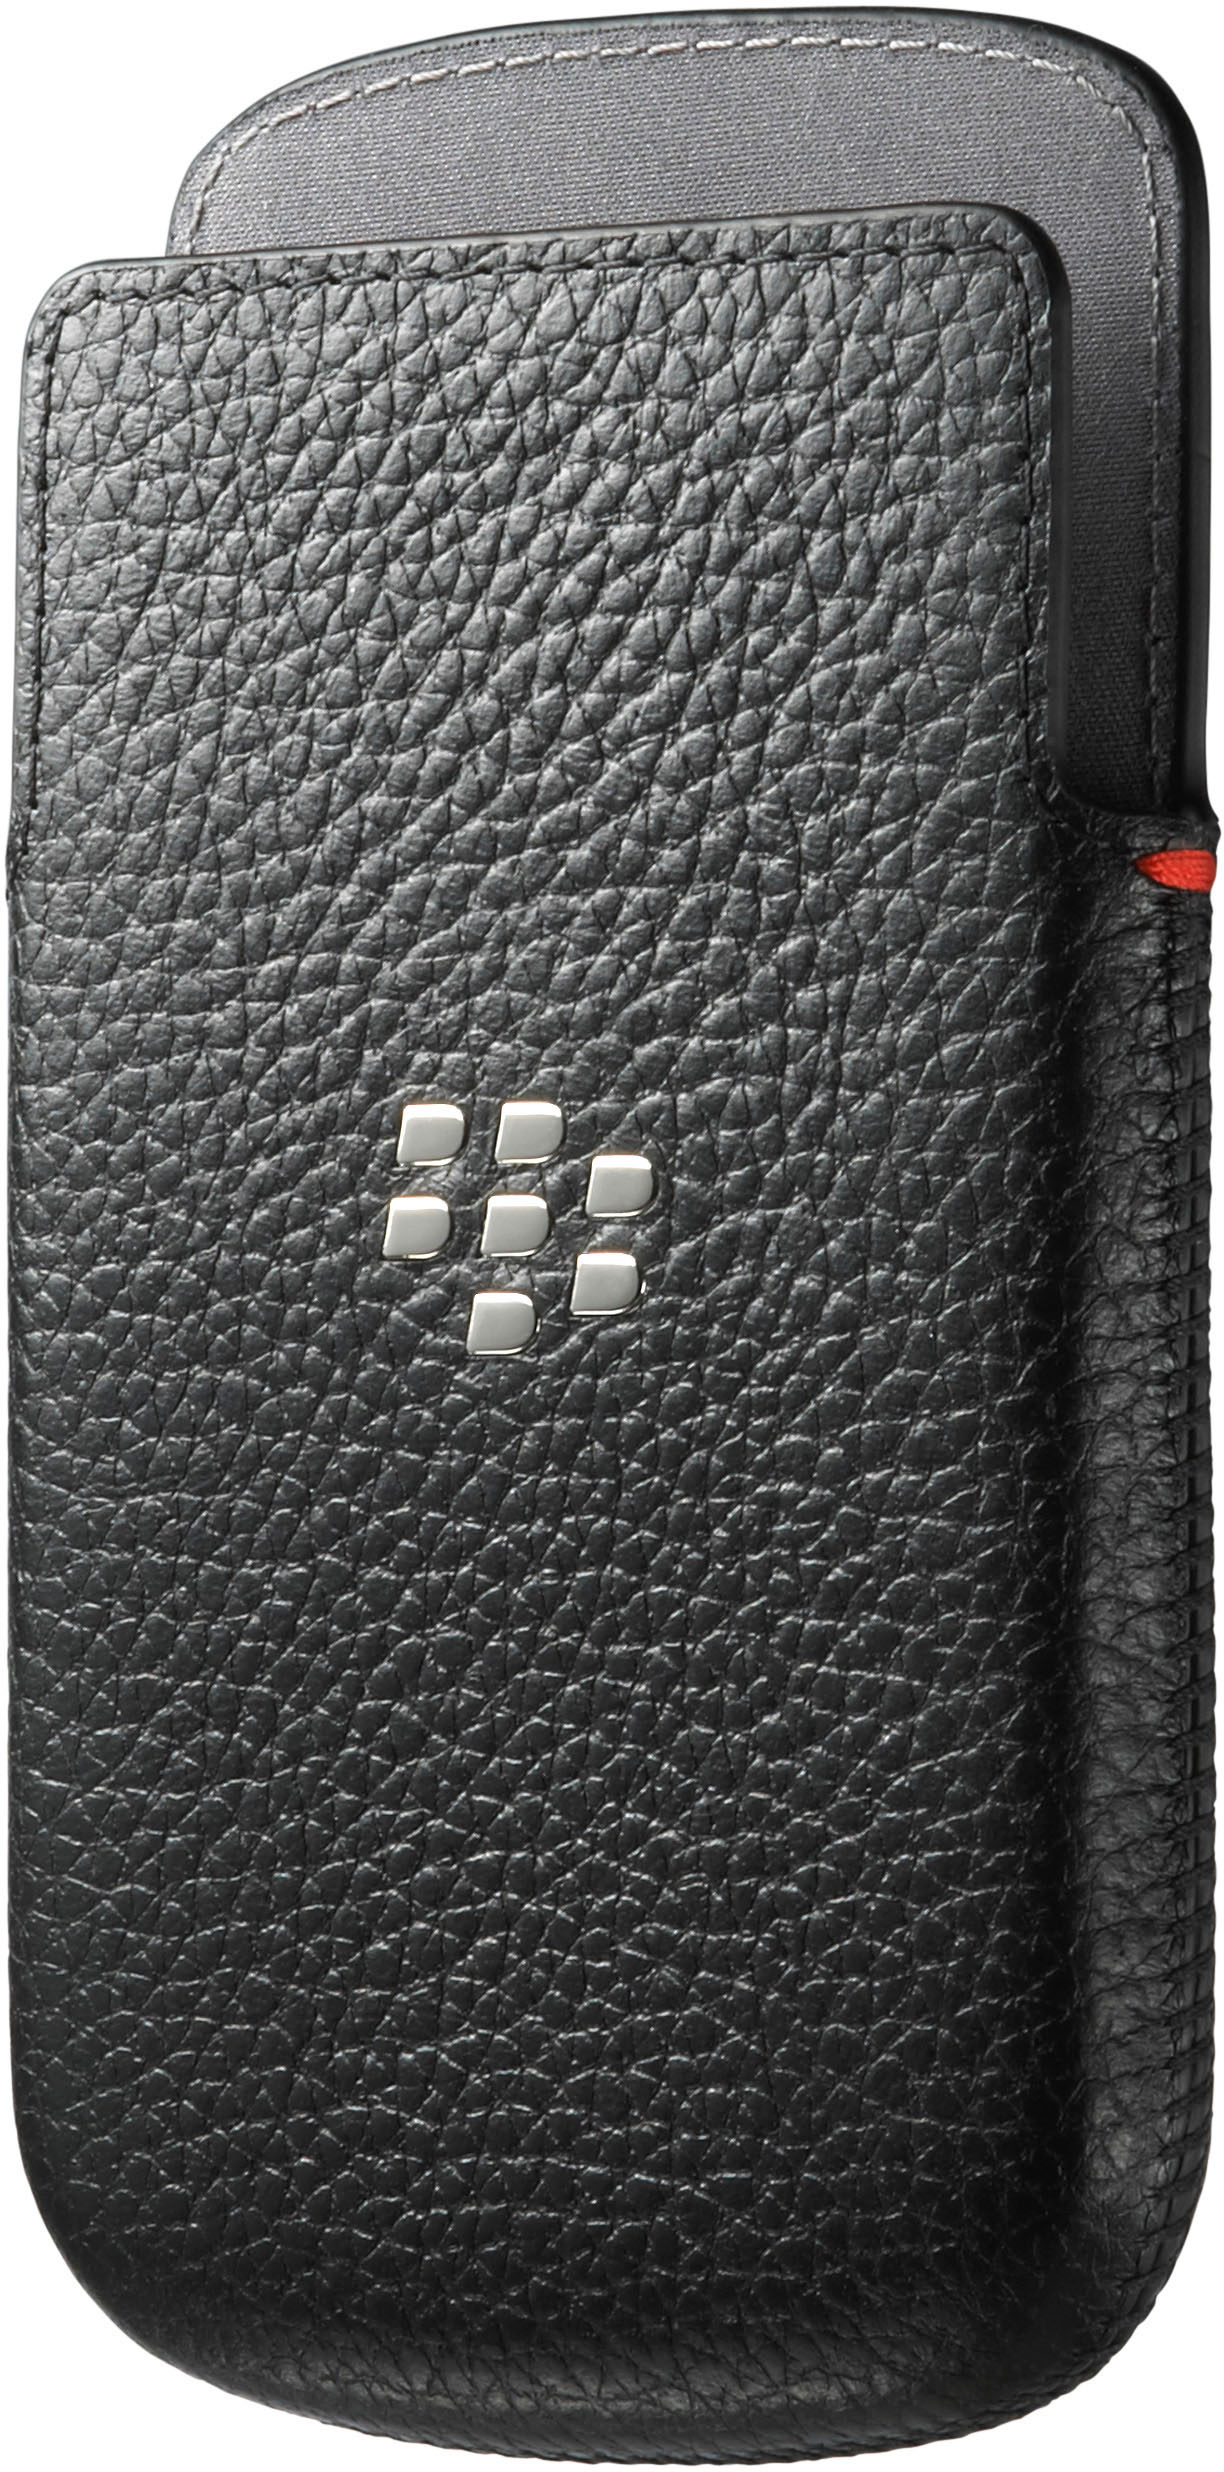 Q10, Blackberry, schwarz, Q10 BLACKBERRY für Schwarz Ledertasche